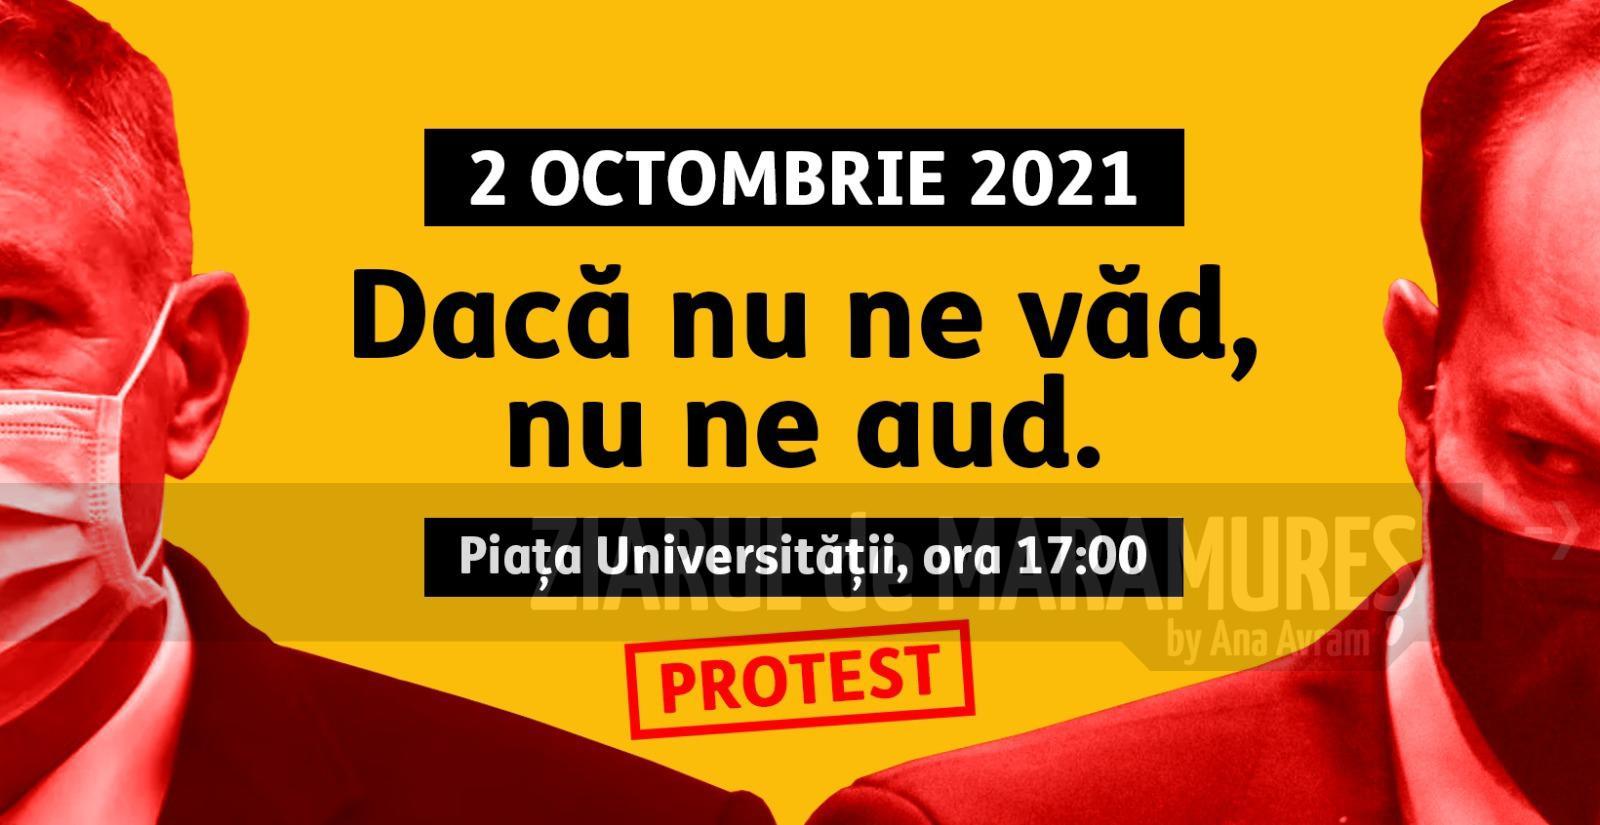 Maramureșenii de AUR vor fi prezenți într-un număr mare la protestul din 2 octombrie din Capitală. CARTEL Alfa-29 septembrie, în fața Prefecturii Maramureș